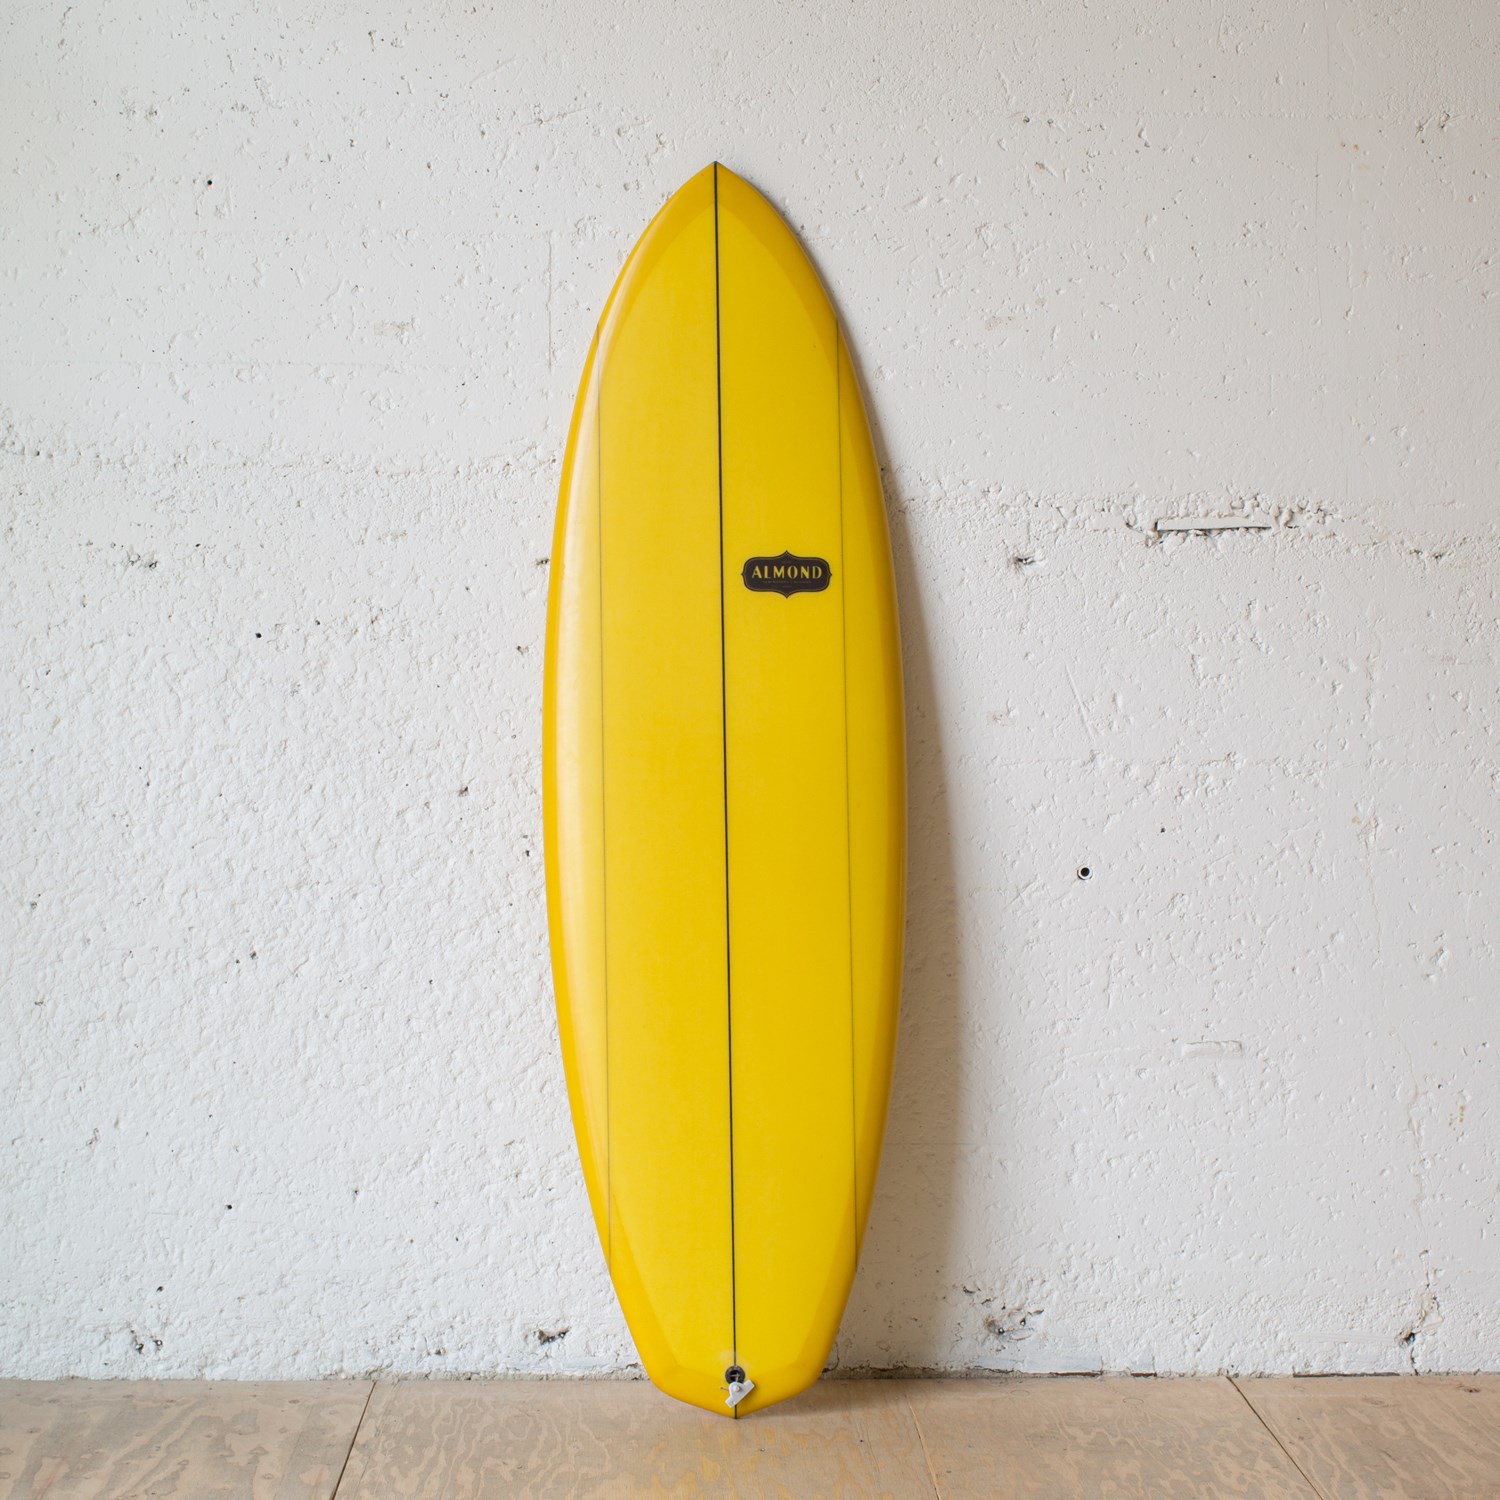 Almond Surfboards Quadkumber 5'8